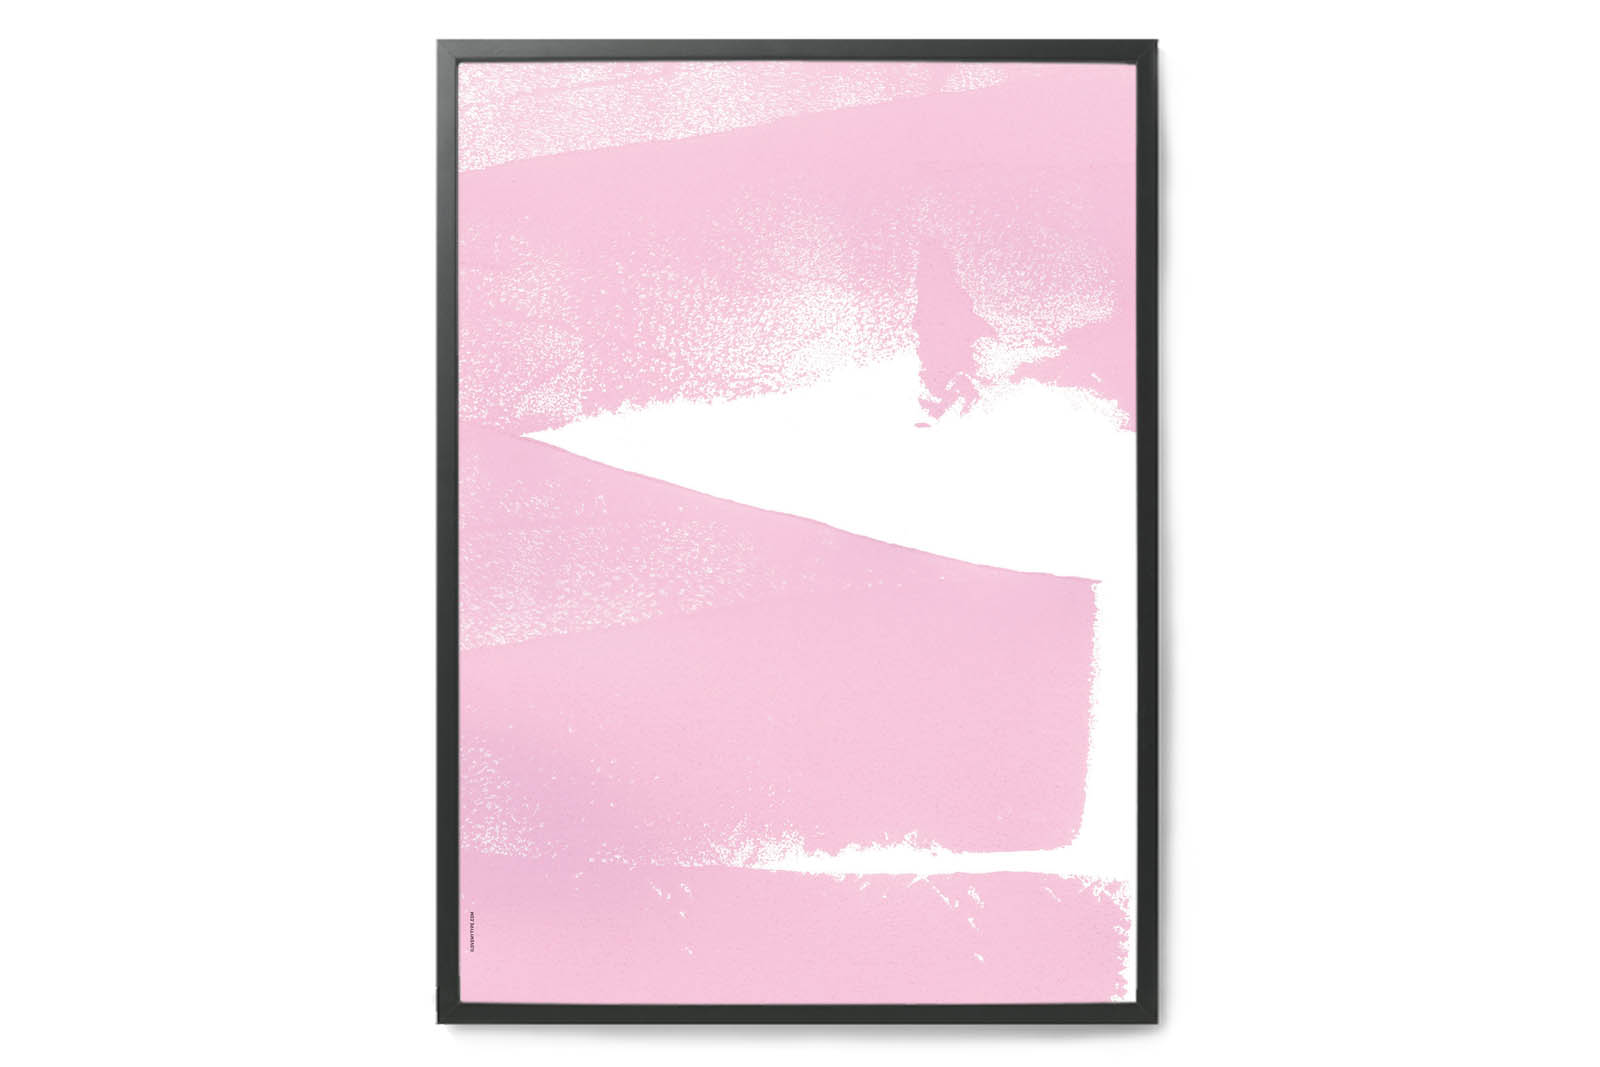 【在庫限り】【再入荷なし】 I LOVE MY TYPE ポスター/アートプリント 50 70cm Bubble Gum Pink【イラスト インテリア 北欧雑貨 おしゃれ 壁掛け 絵画 パネル モダン モノクロ モノトーン デン…